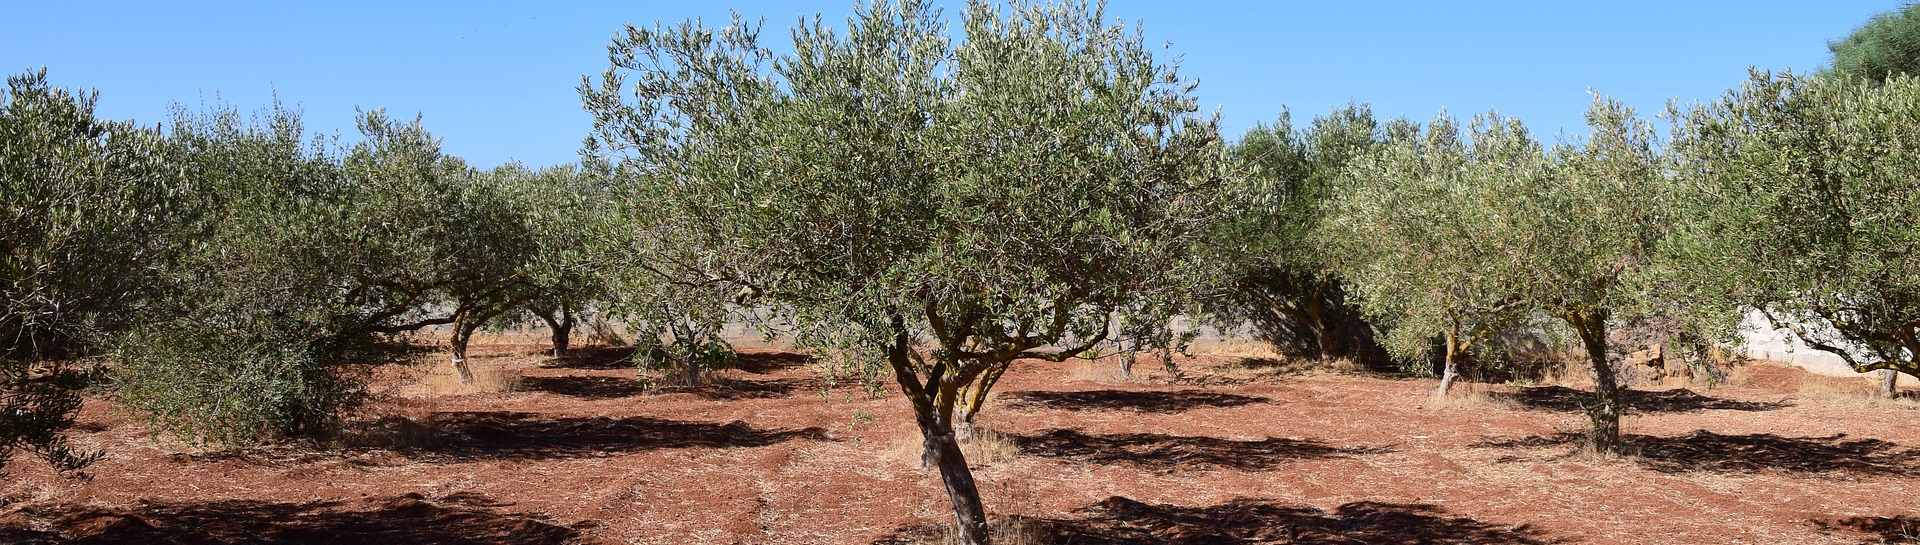 olivenbäume